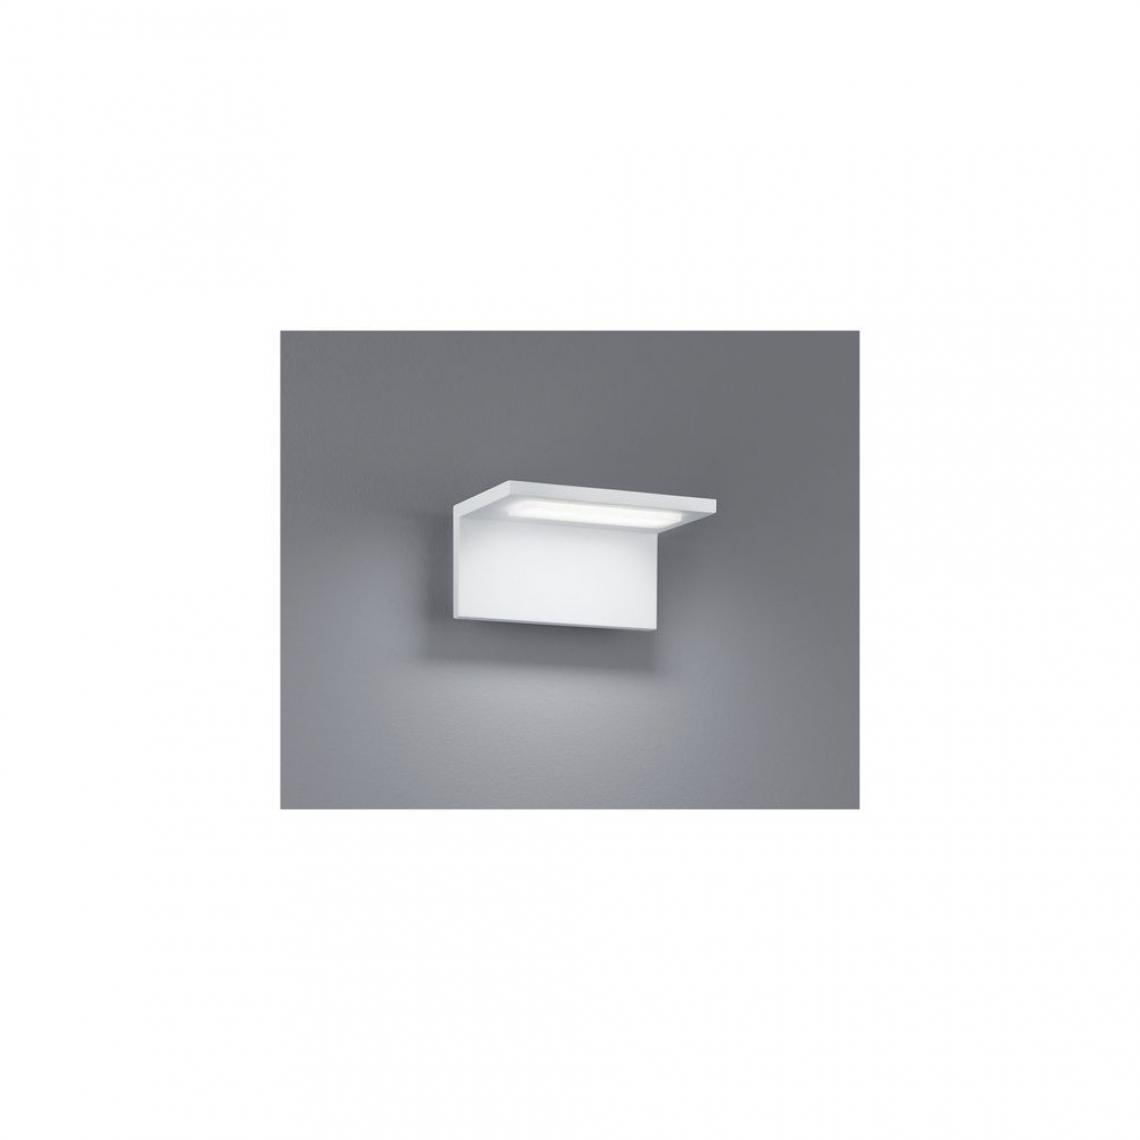 Boutica-Design - Applique Trave Blanc 1x6W SMD LED - Applique, hublot